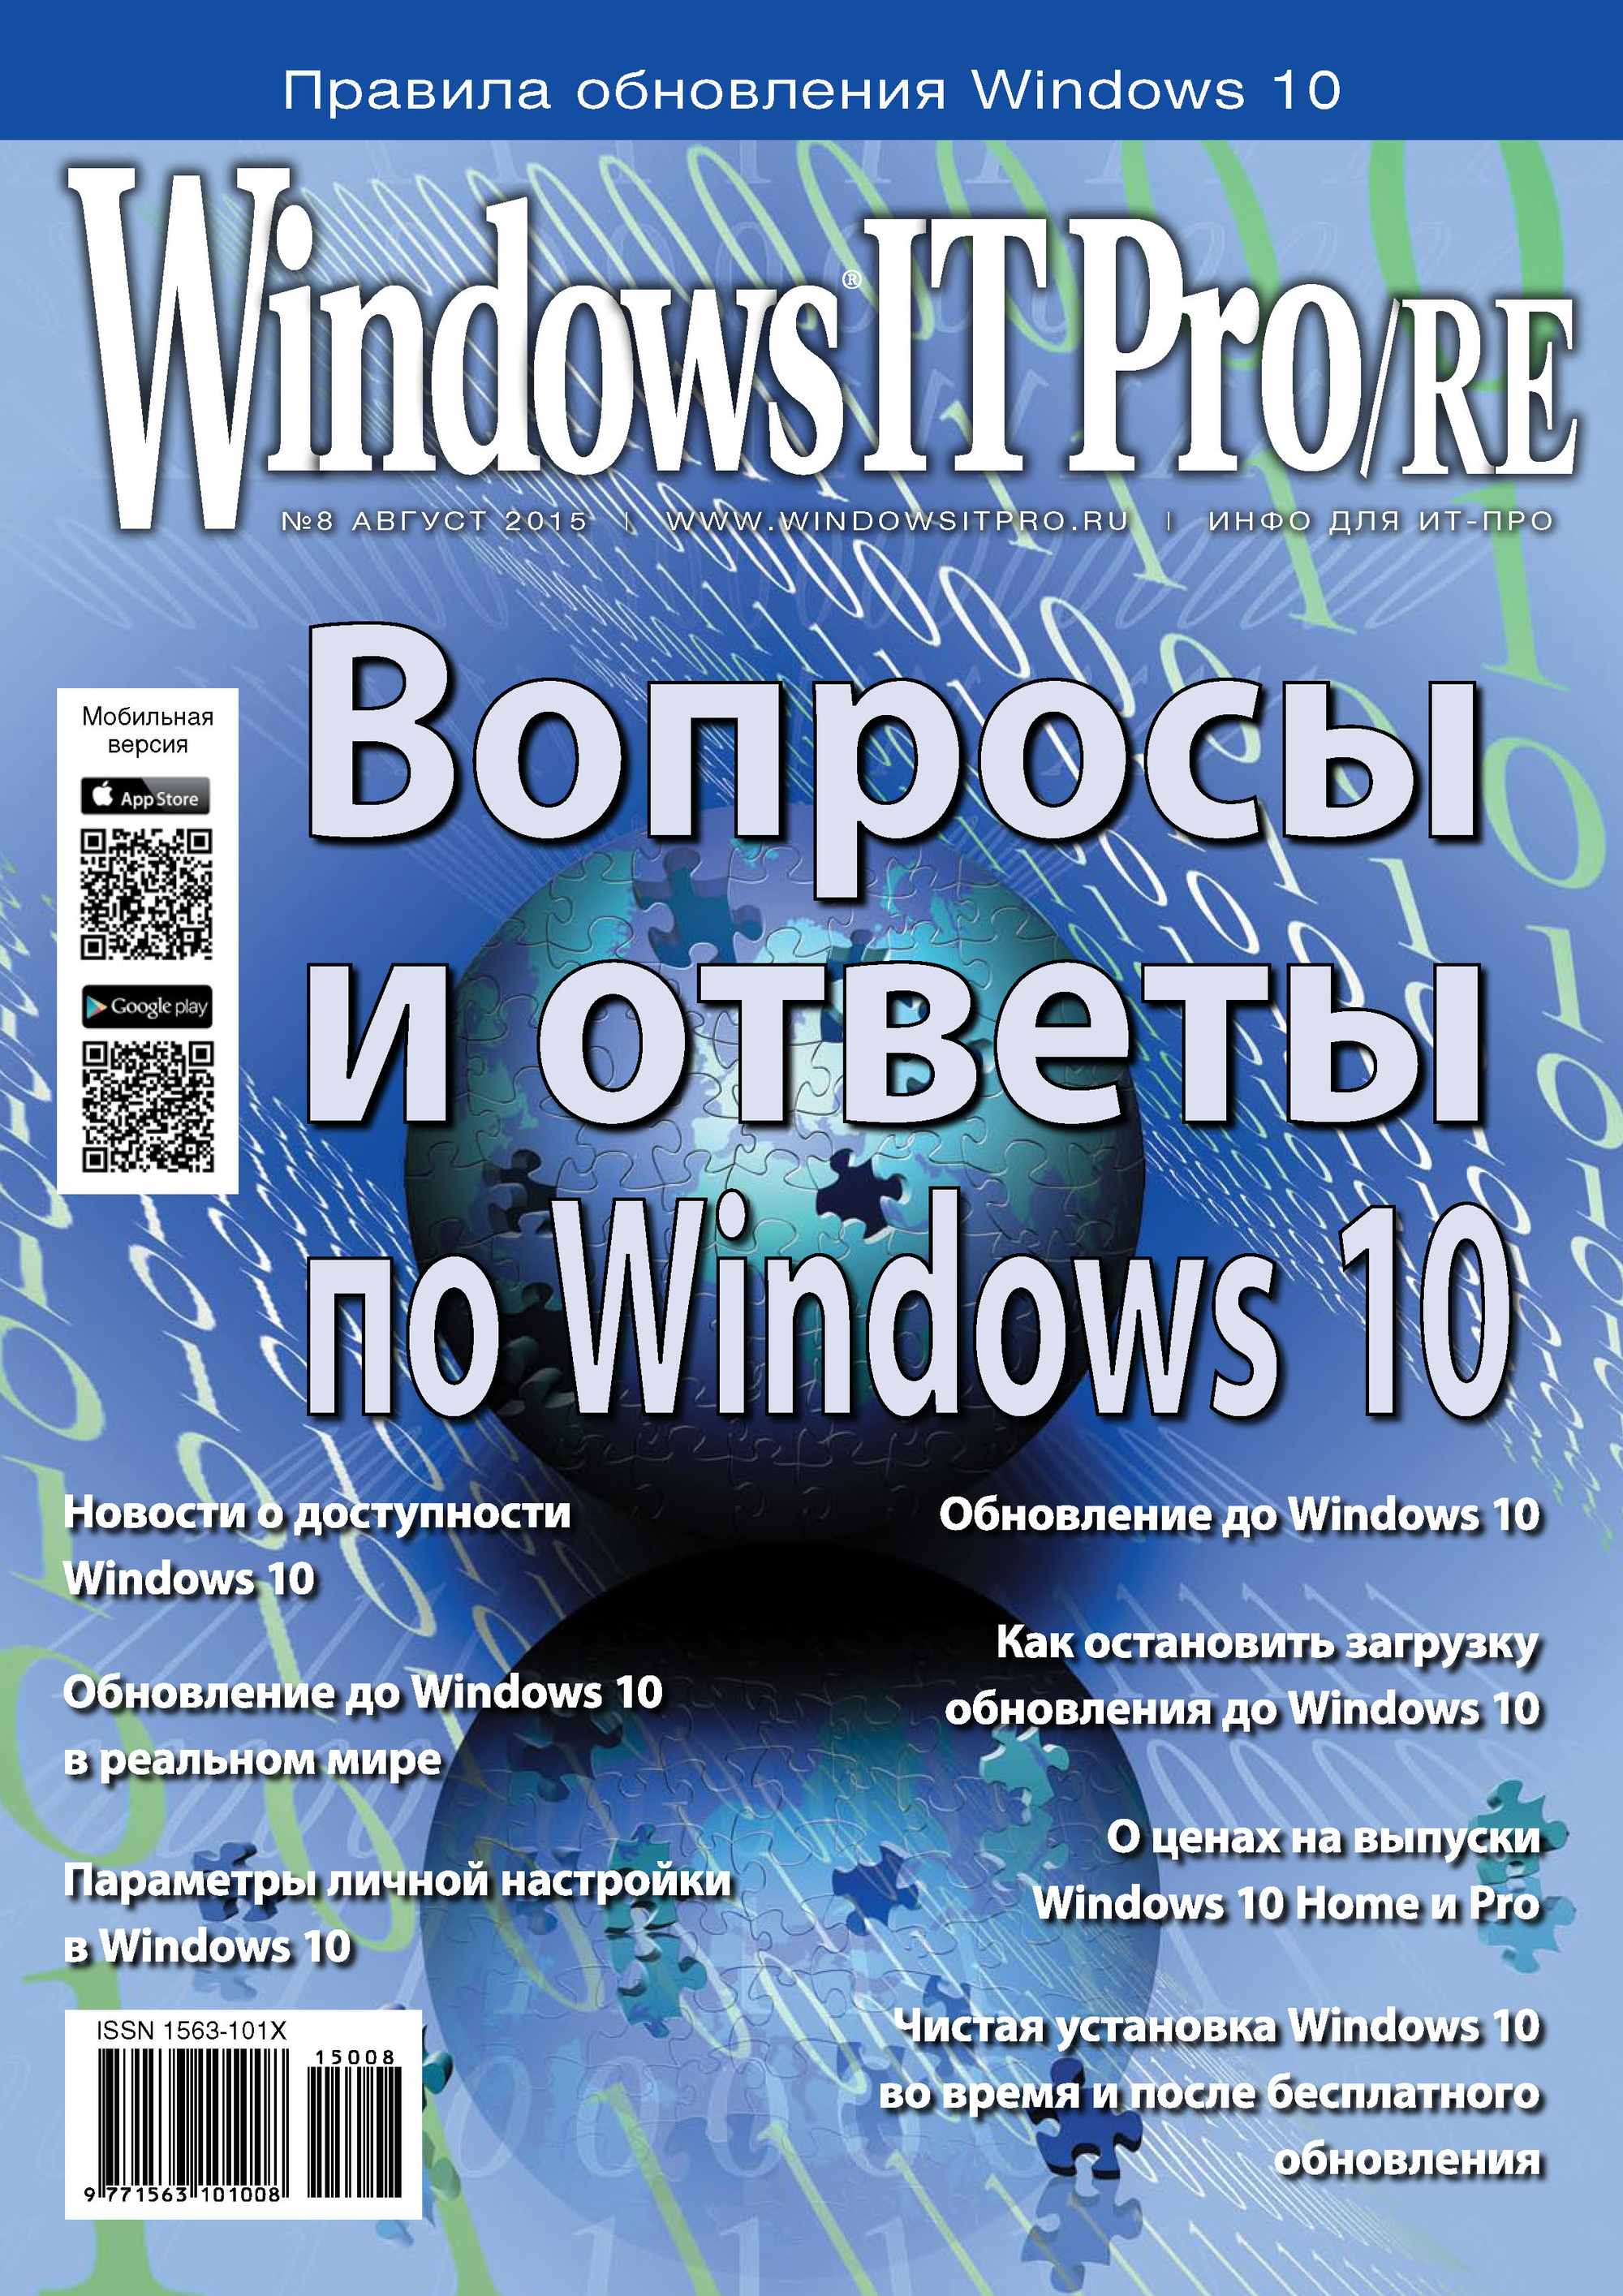 Книга Windows IT Pro 2015 Windows IT Pro/RE №08/2015 созданная Открытые системы может относится к жанру компьютерные журналы, ОС и сети, программы. Стоимость электронной книги Windows IT Pro/RE №08/2015 с идентификатором 11079997 составляет 484.00 руб.